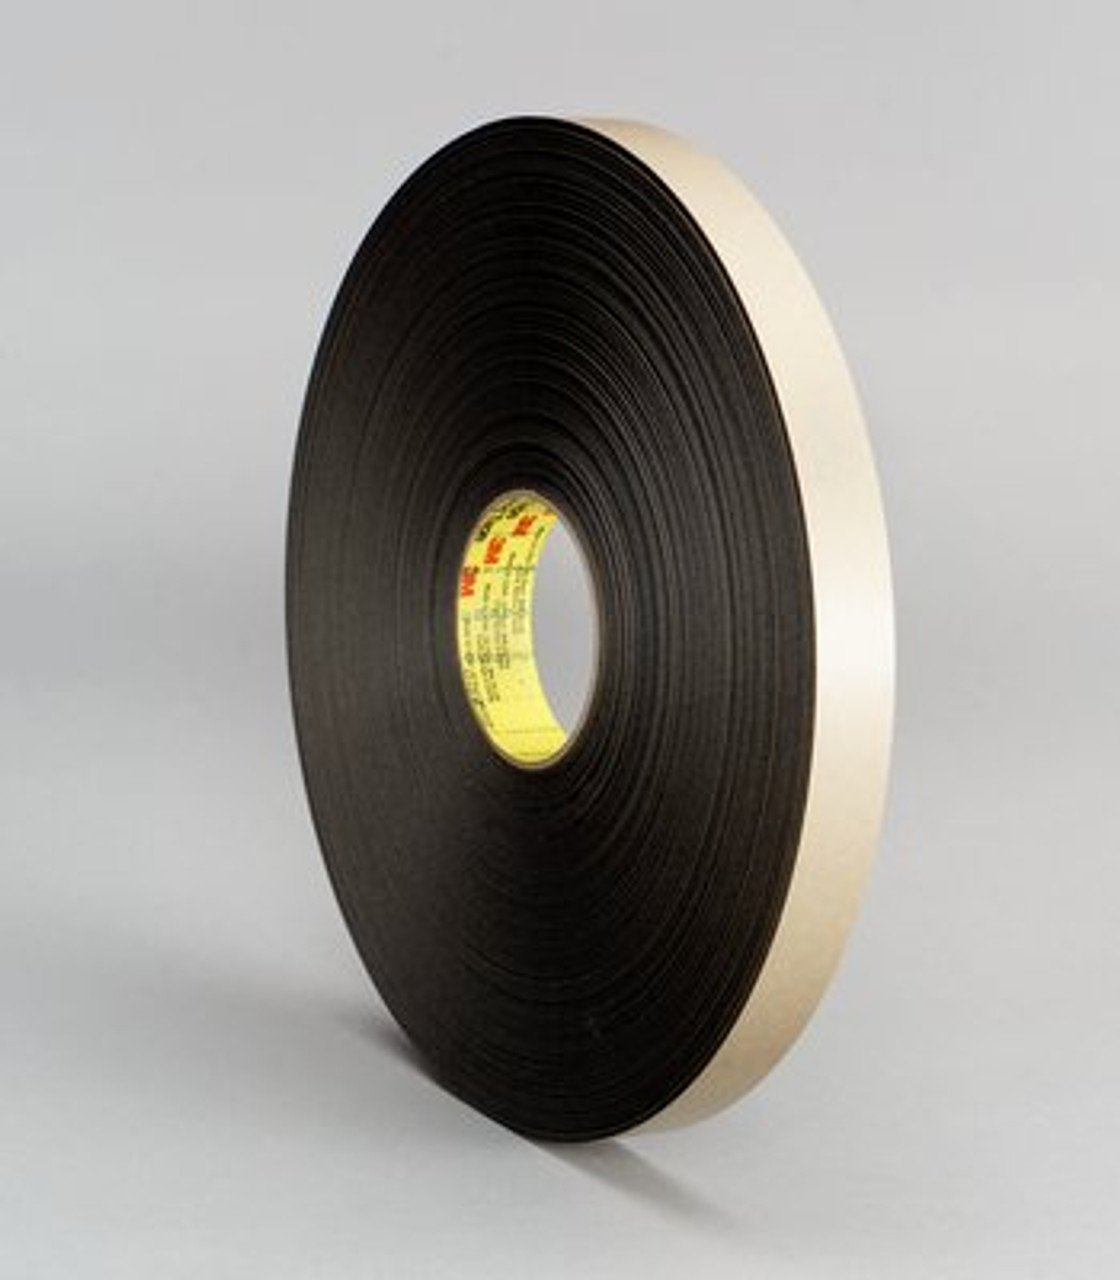 3M™ Double Coated Polyethylene Foam Tape 4492B, Black, 1 in x 72 yd, 31 mil